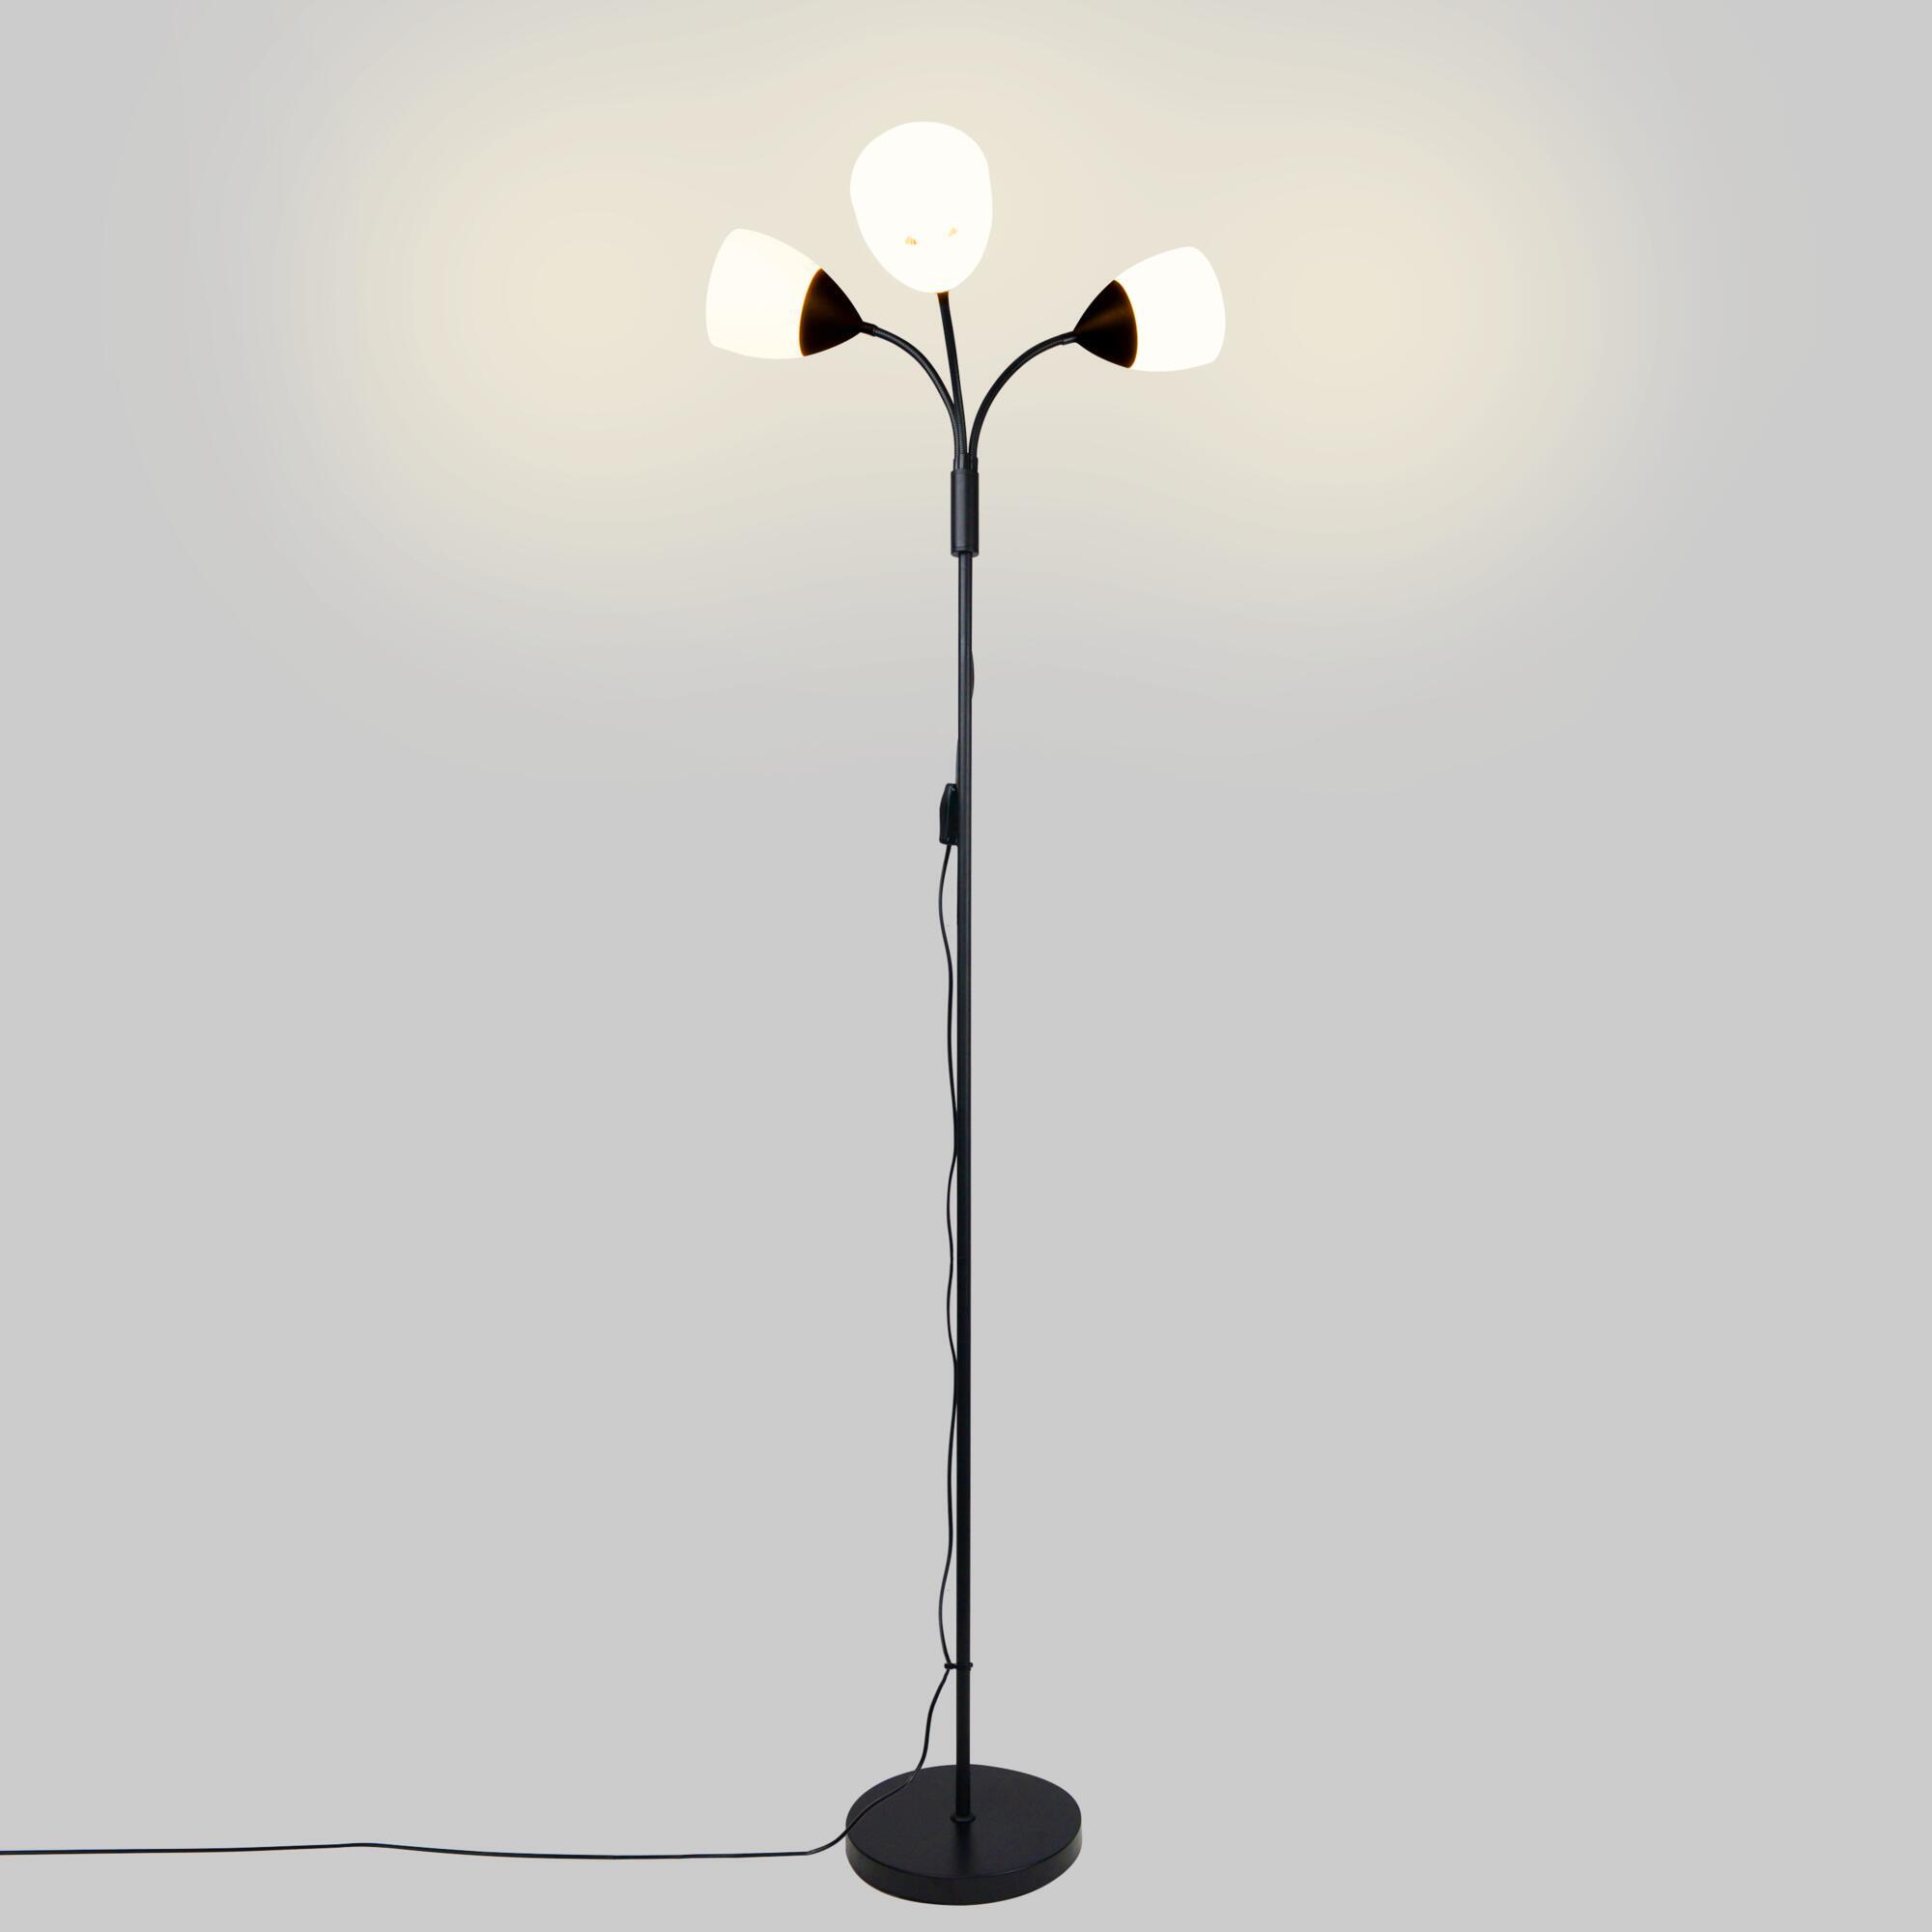 Lampadaire moderne pour salon hauteur 1m55 E27 100W maxi chrome